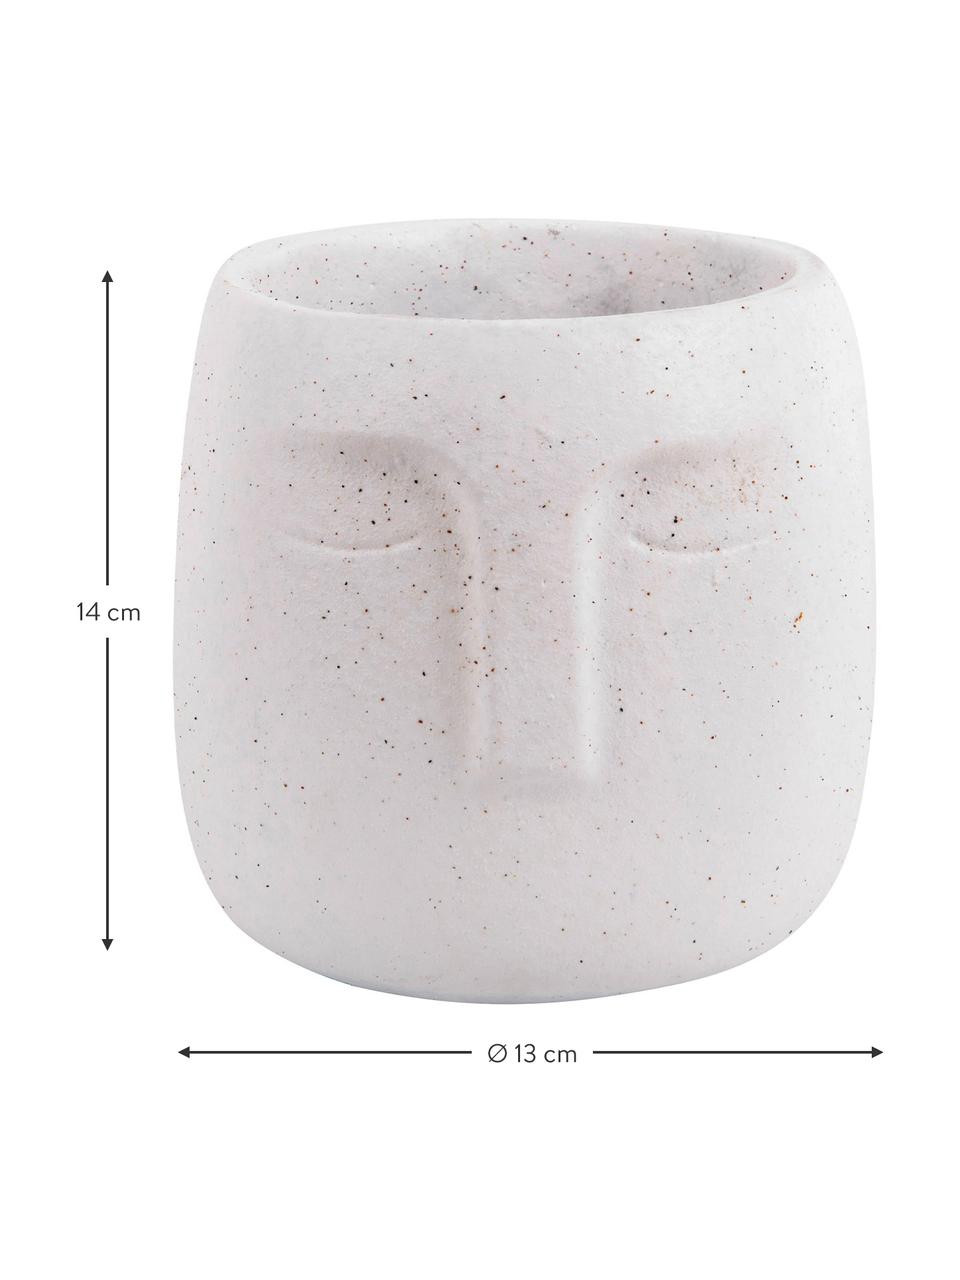 Kleiner Beton-Übertopf Face in Weiss, Beton, Weiss, Ø 12,5 x H 14 cm